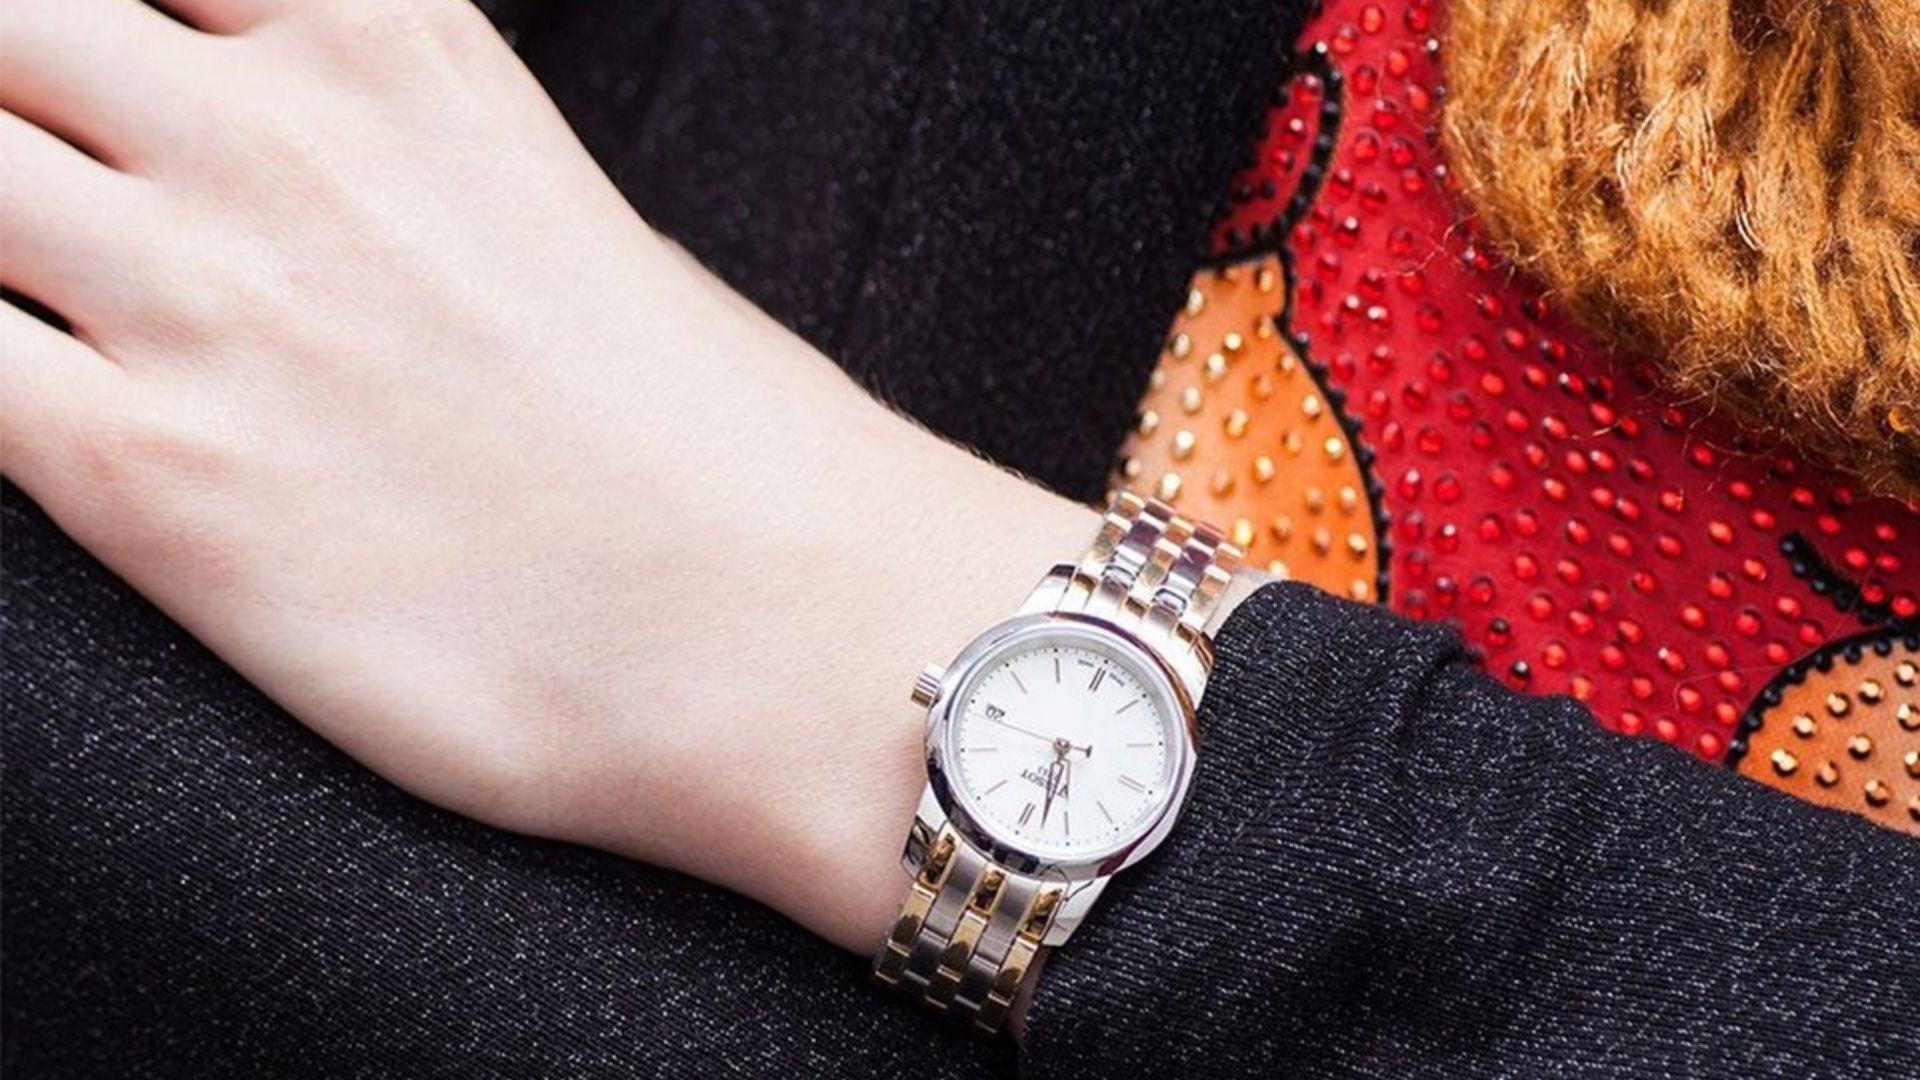 (P) Ceasul de damă Tissot – accesoriul și bijuteria perfectă de la încheietura mâinii